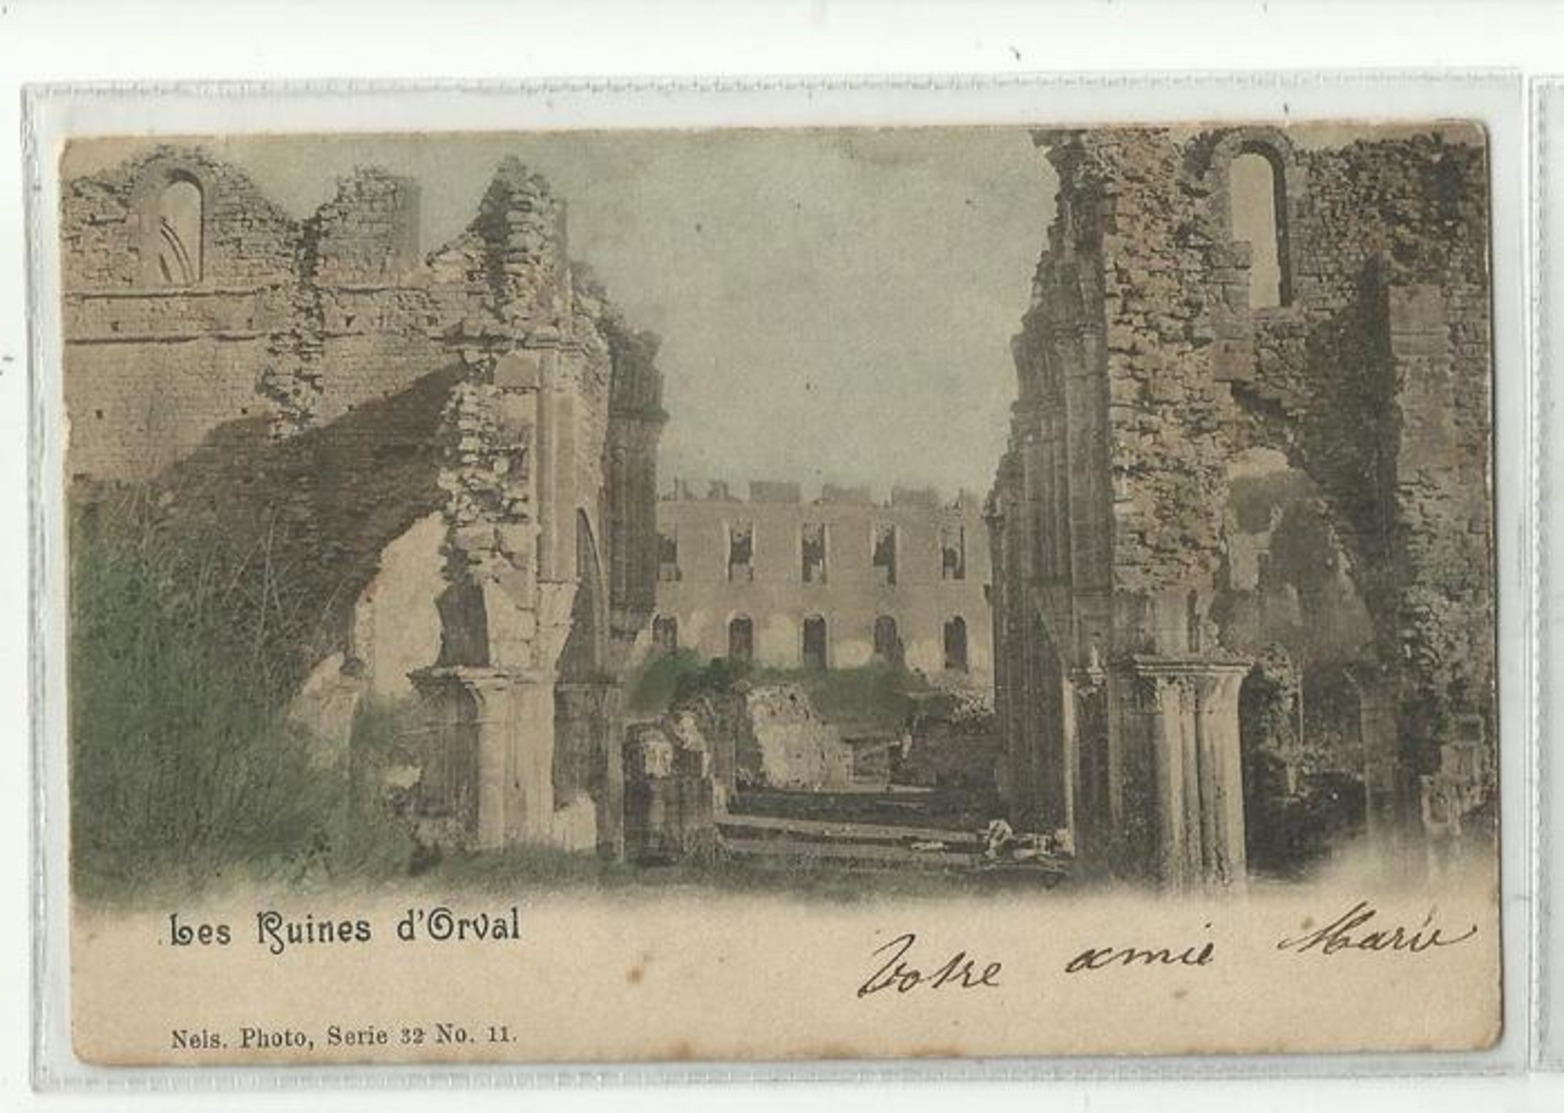 ORVAL - Les Ruines - Nels 32 N° 11 Couleur - Florenville